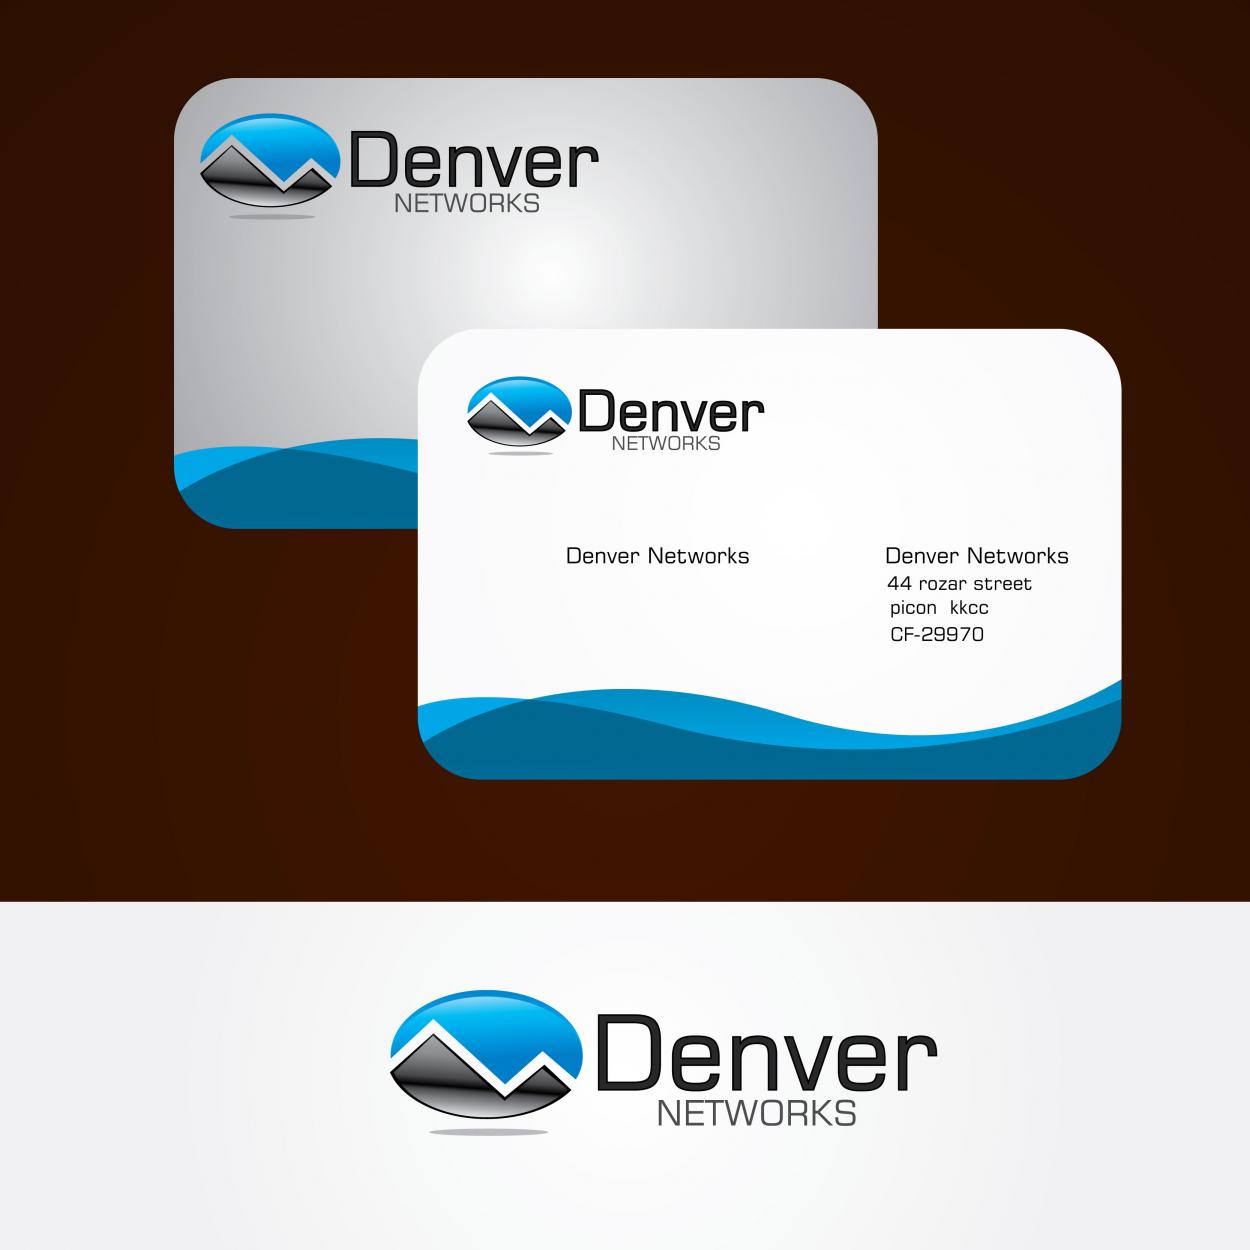 Business Card & Stationery Design entry 91431 submitted by maadezine to the Business Card & Stationery Design for Denver Networks run by denvernetworks